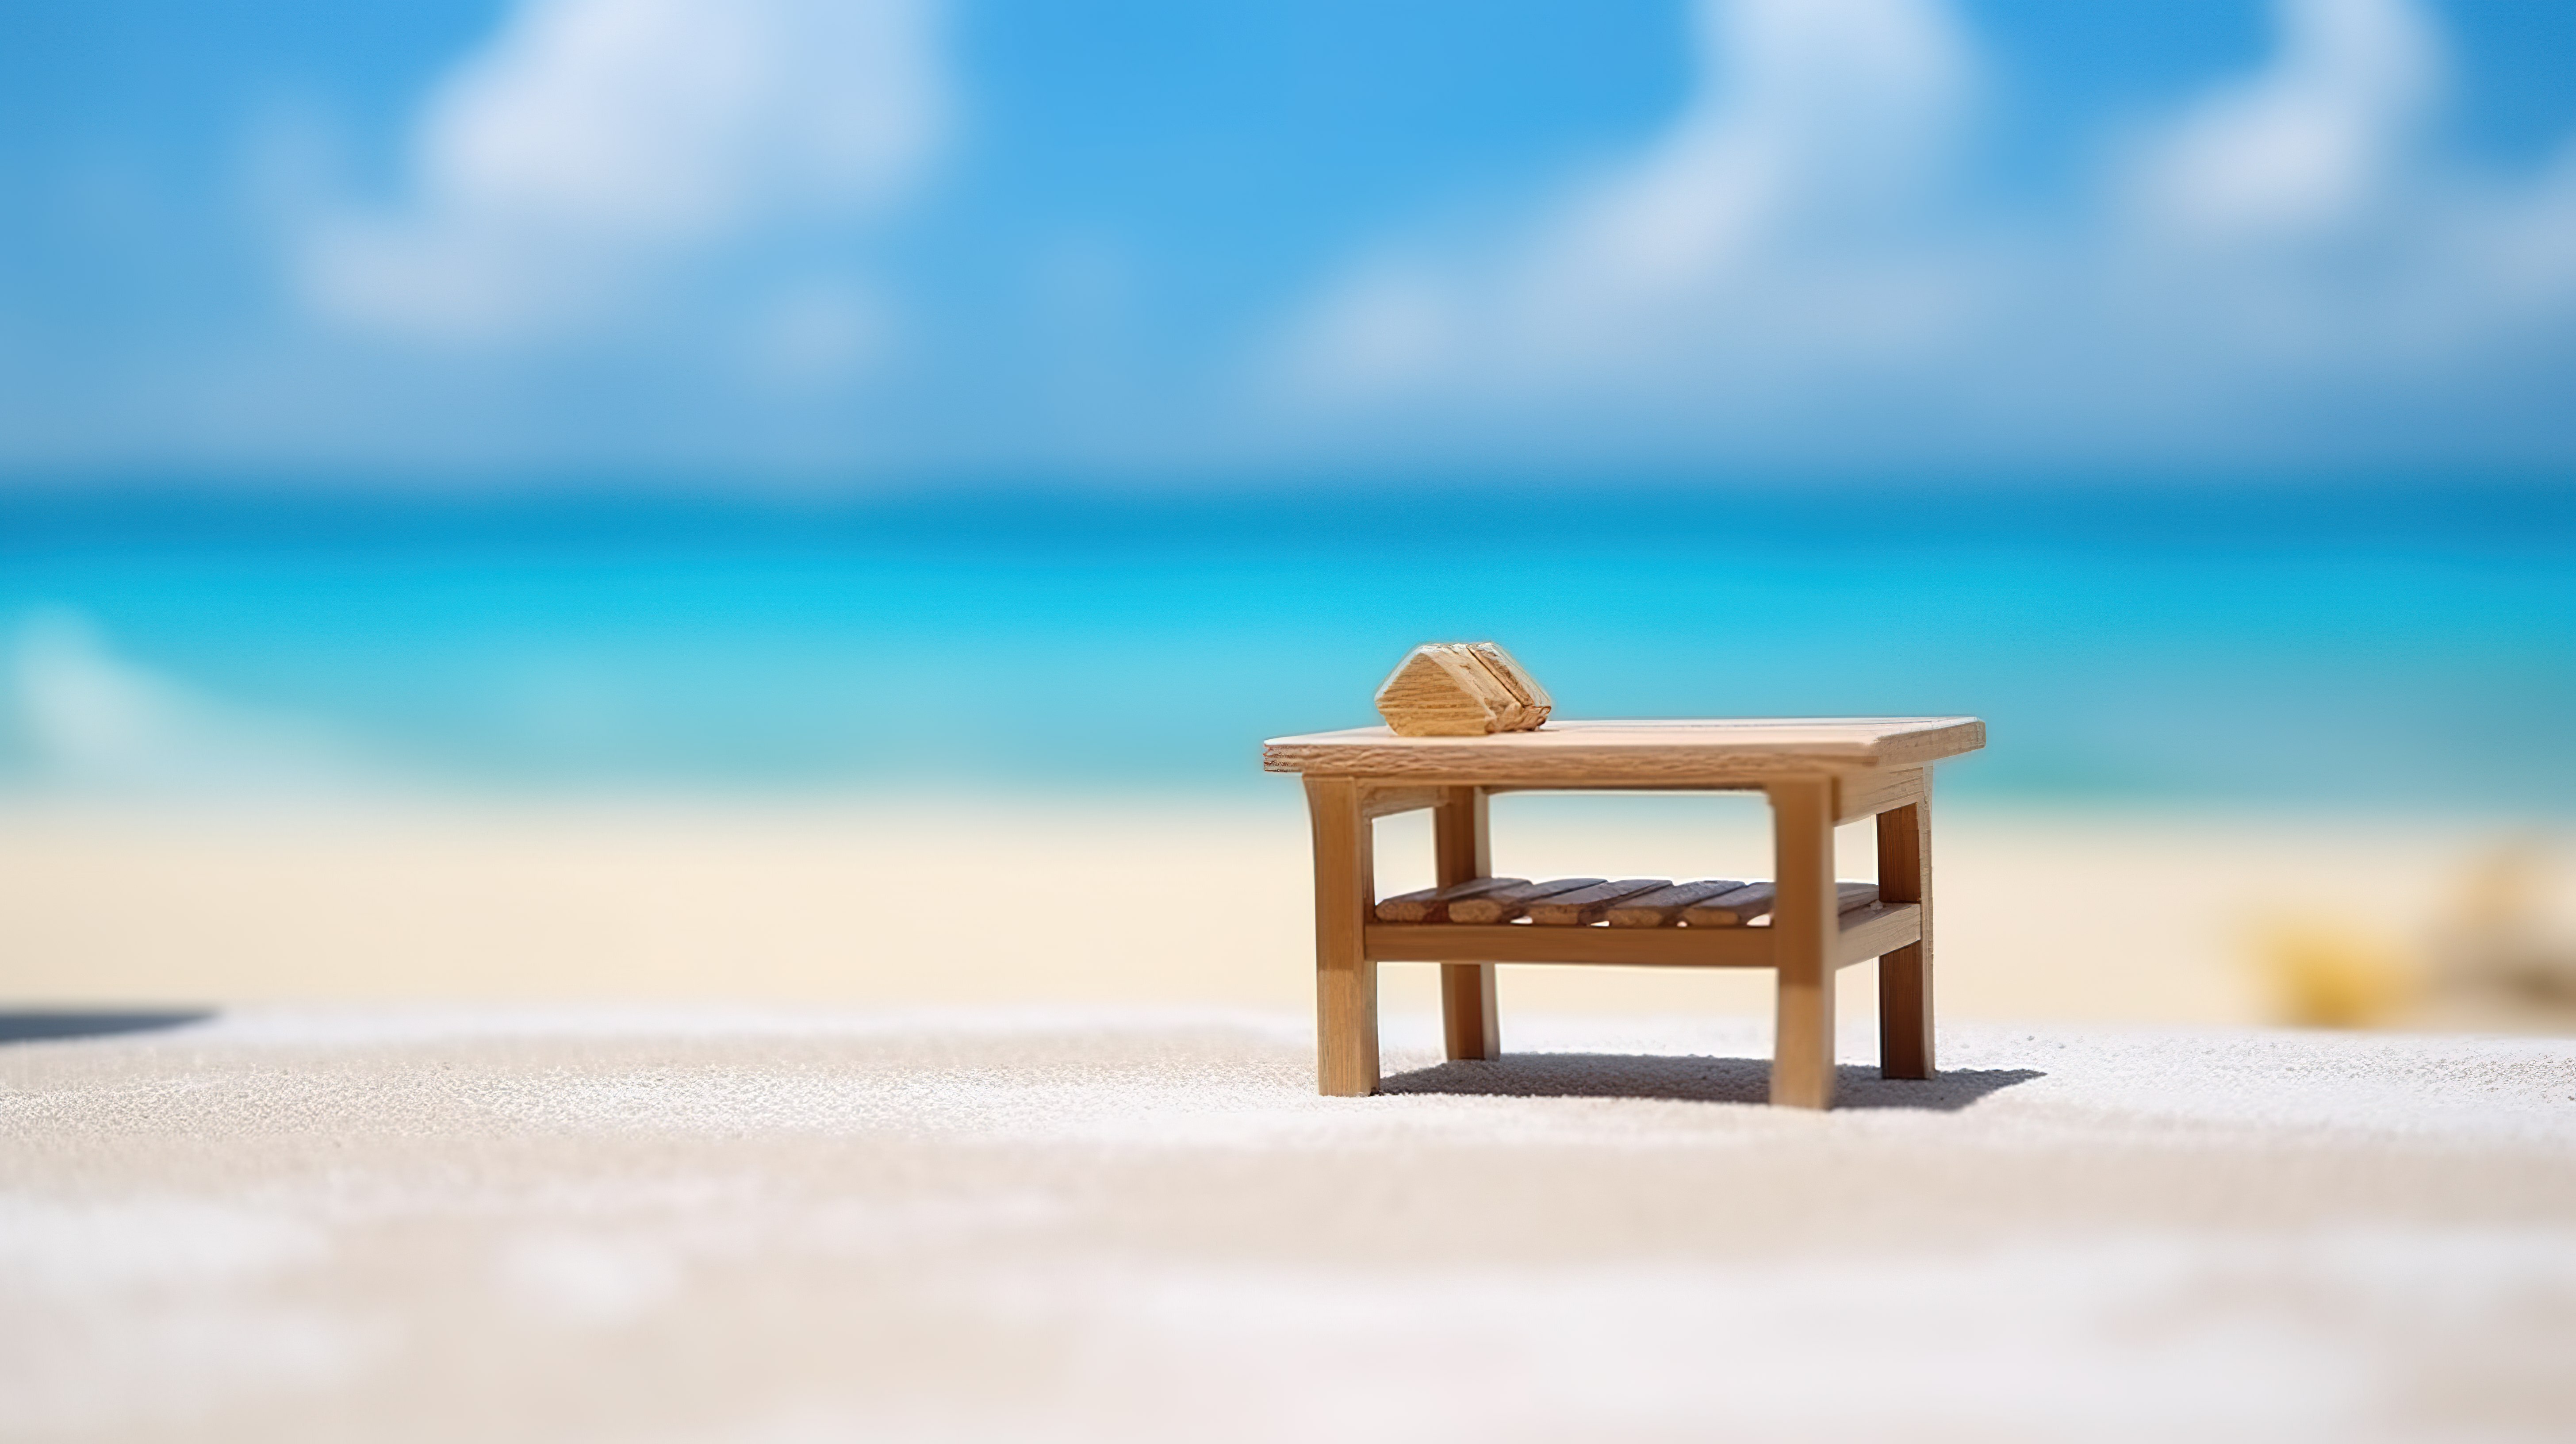 夏季景观与木桌上的沙滩椅 3D 渲染模糊效果图片